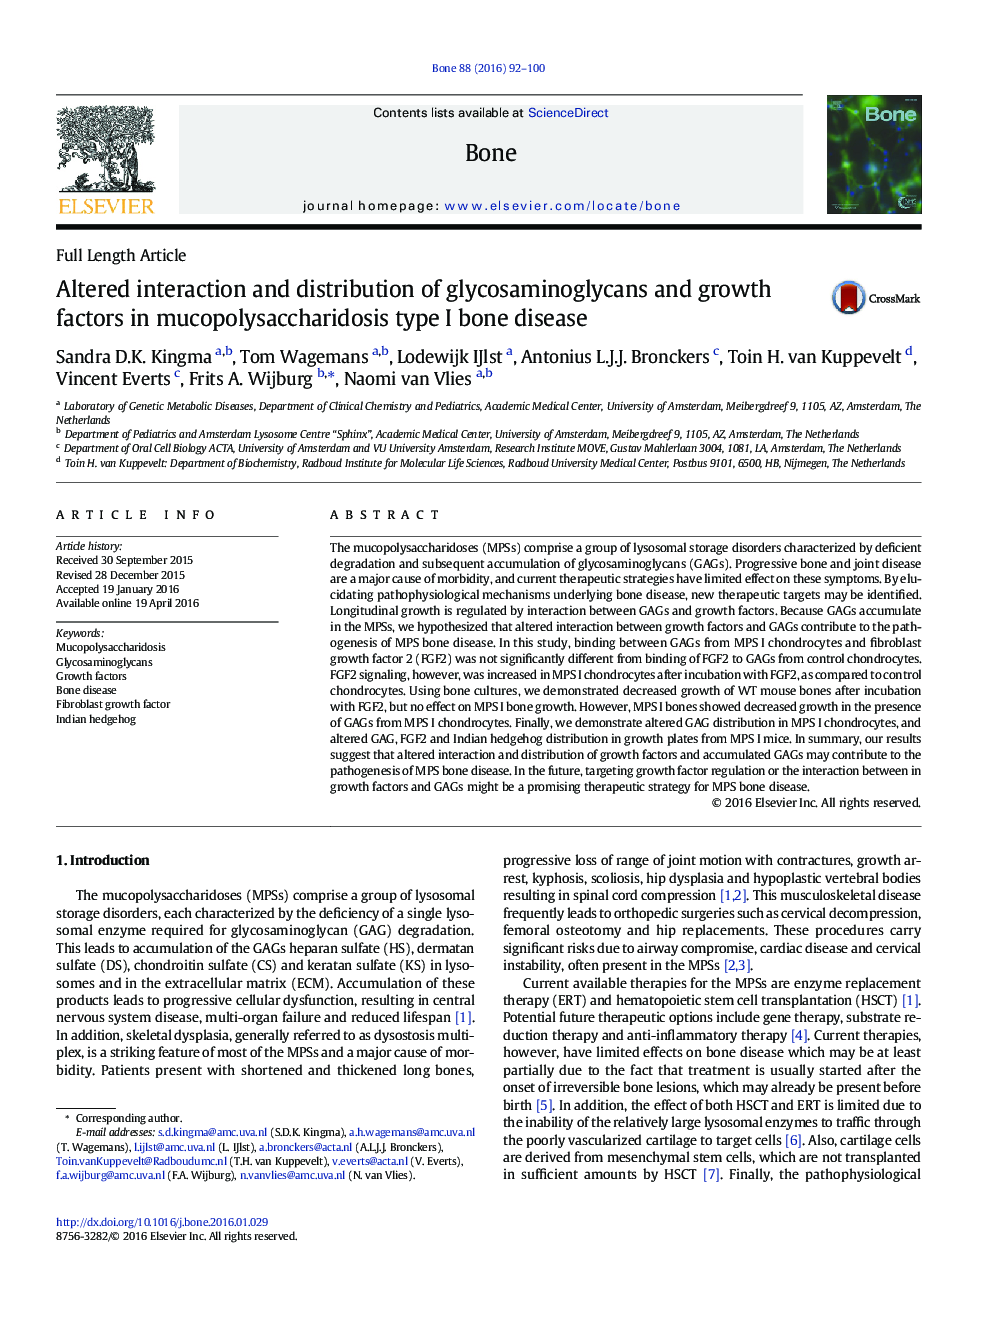 تعامل جبری و توزیع گلیکواسامینو گلیکان ها و عوامل رشد در بیماری های نوع 1 استخوانی موکوپلیساکاریدوز 